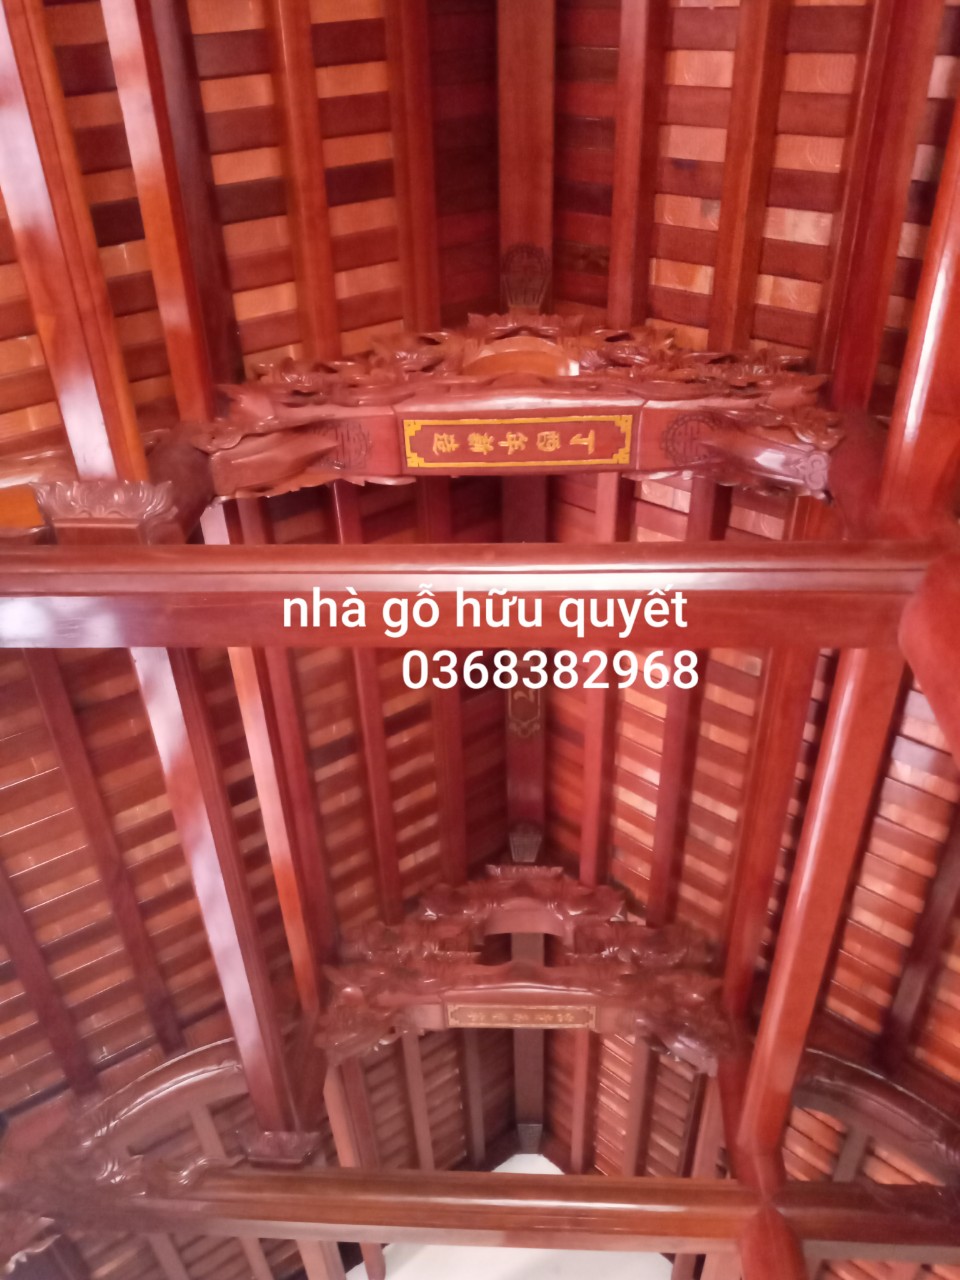 Hữu Quyết chuyên thi công nhà gỗ cổ truyền địa chỉ Hòa Bình, Vĩnh Bảo, Hải Phòng 11438341